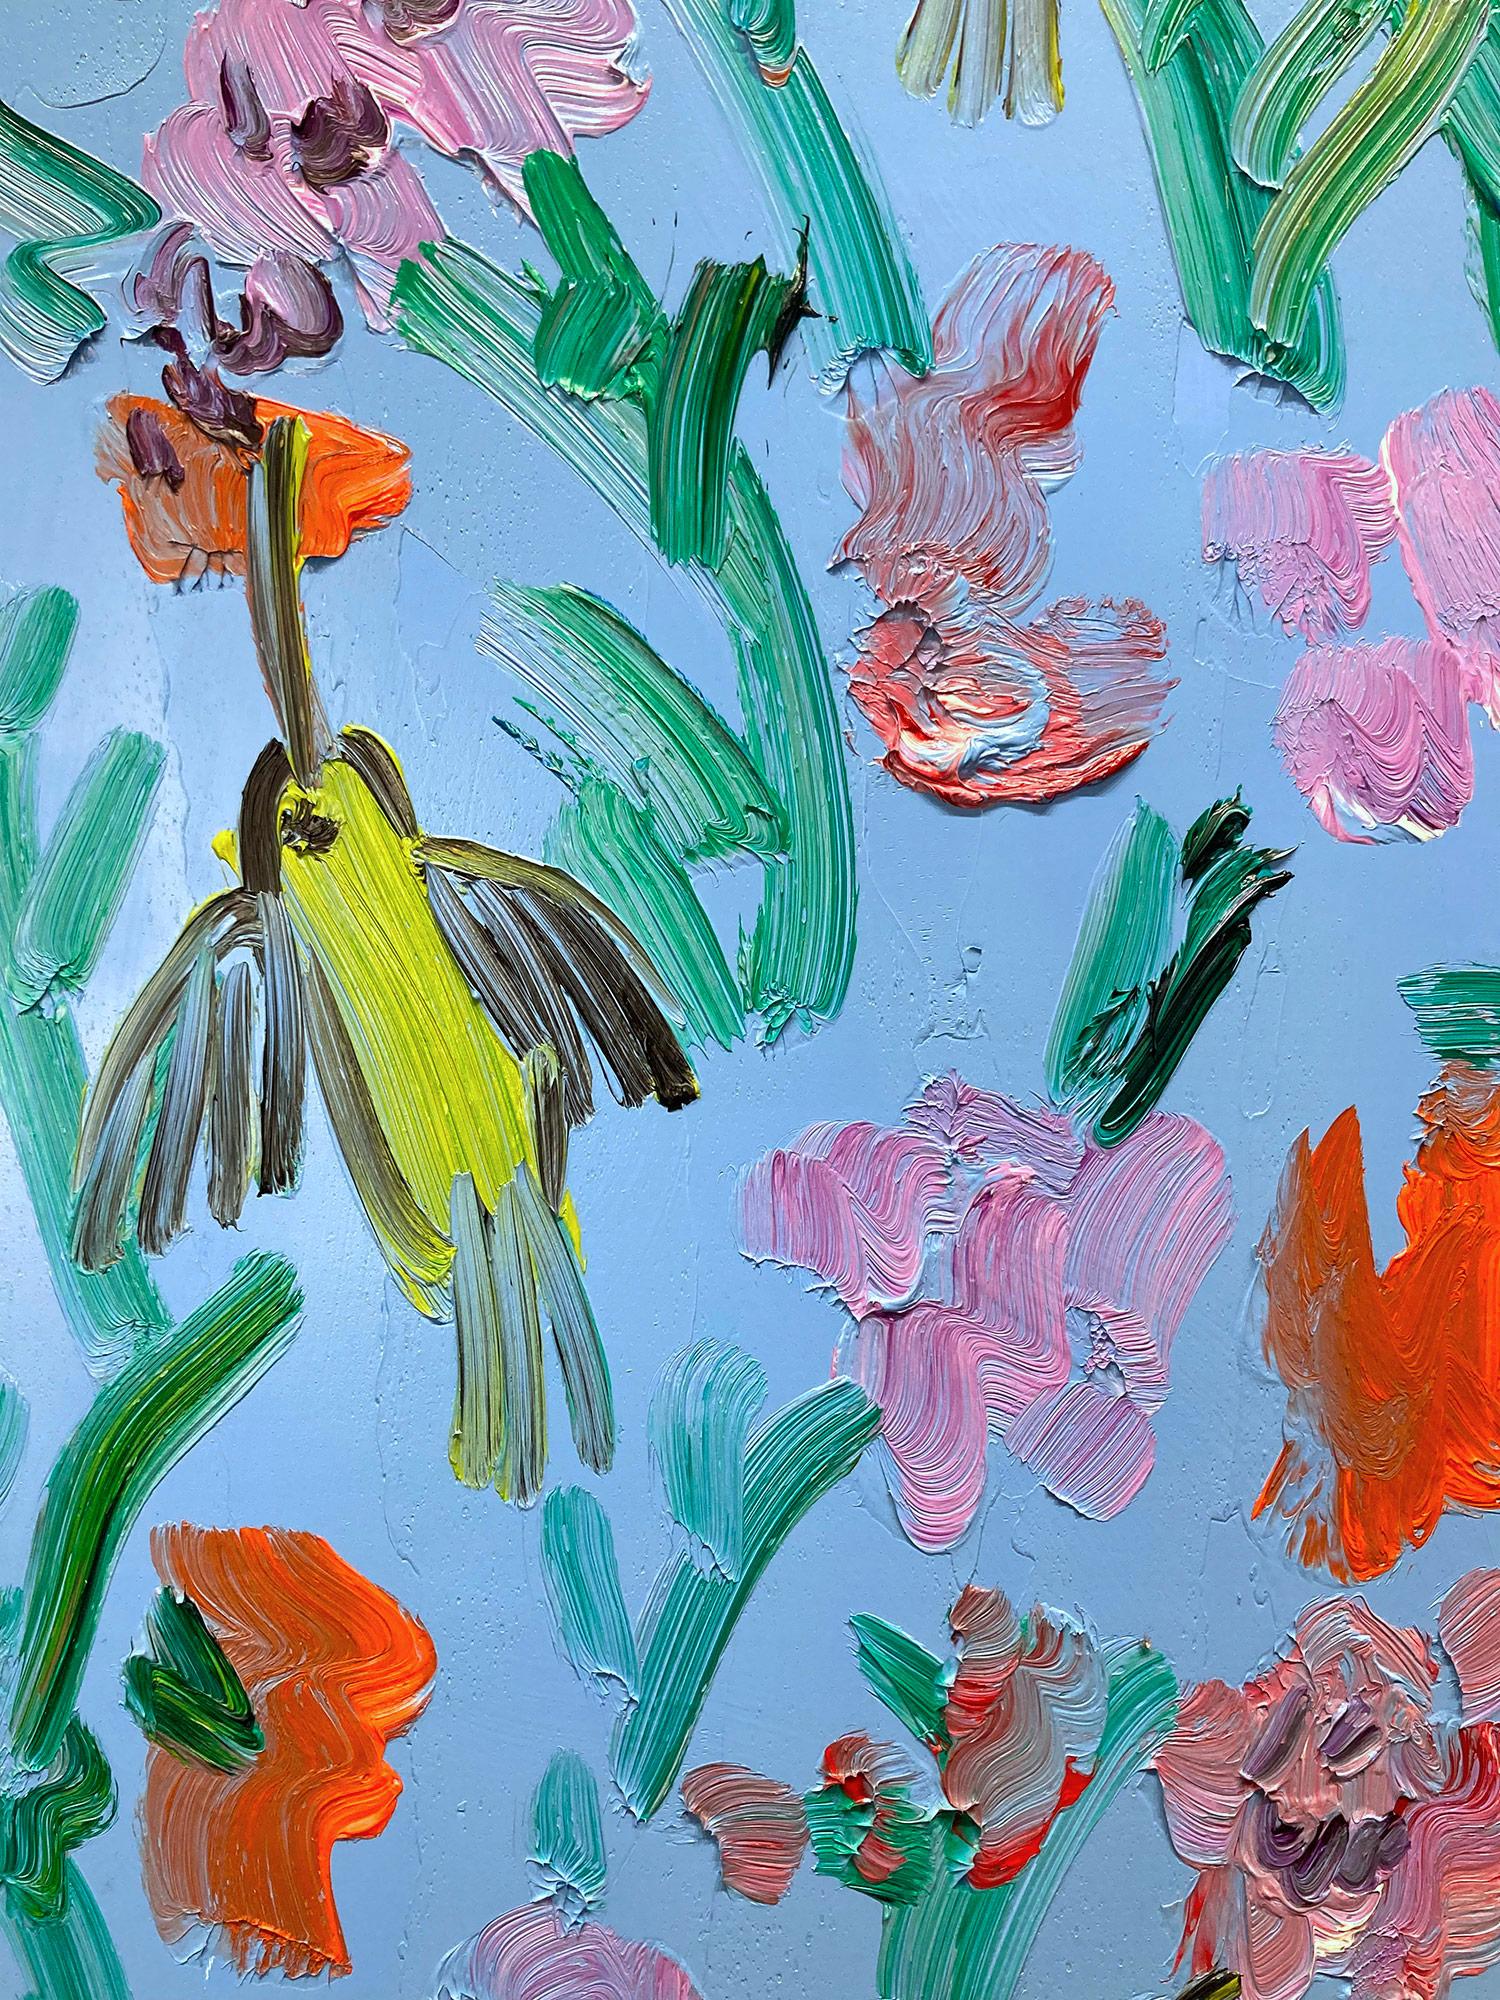 Une magnifique composition de colibris de Slonem. Cette œuvre représente des figures gestuelles d'oiseaux colibris colorés sur un fond bleu ciel français avec une utilisation épaisse de la peinture. Elle est présentée dans un magnifique cadre doré